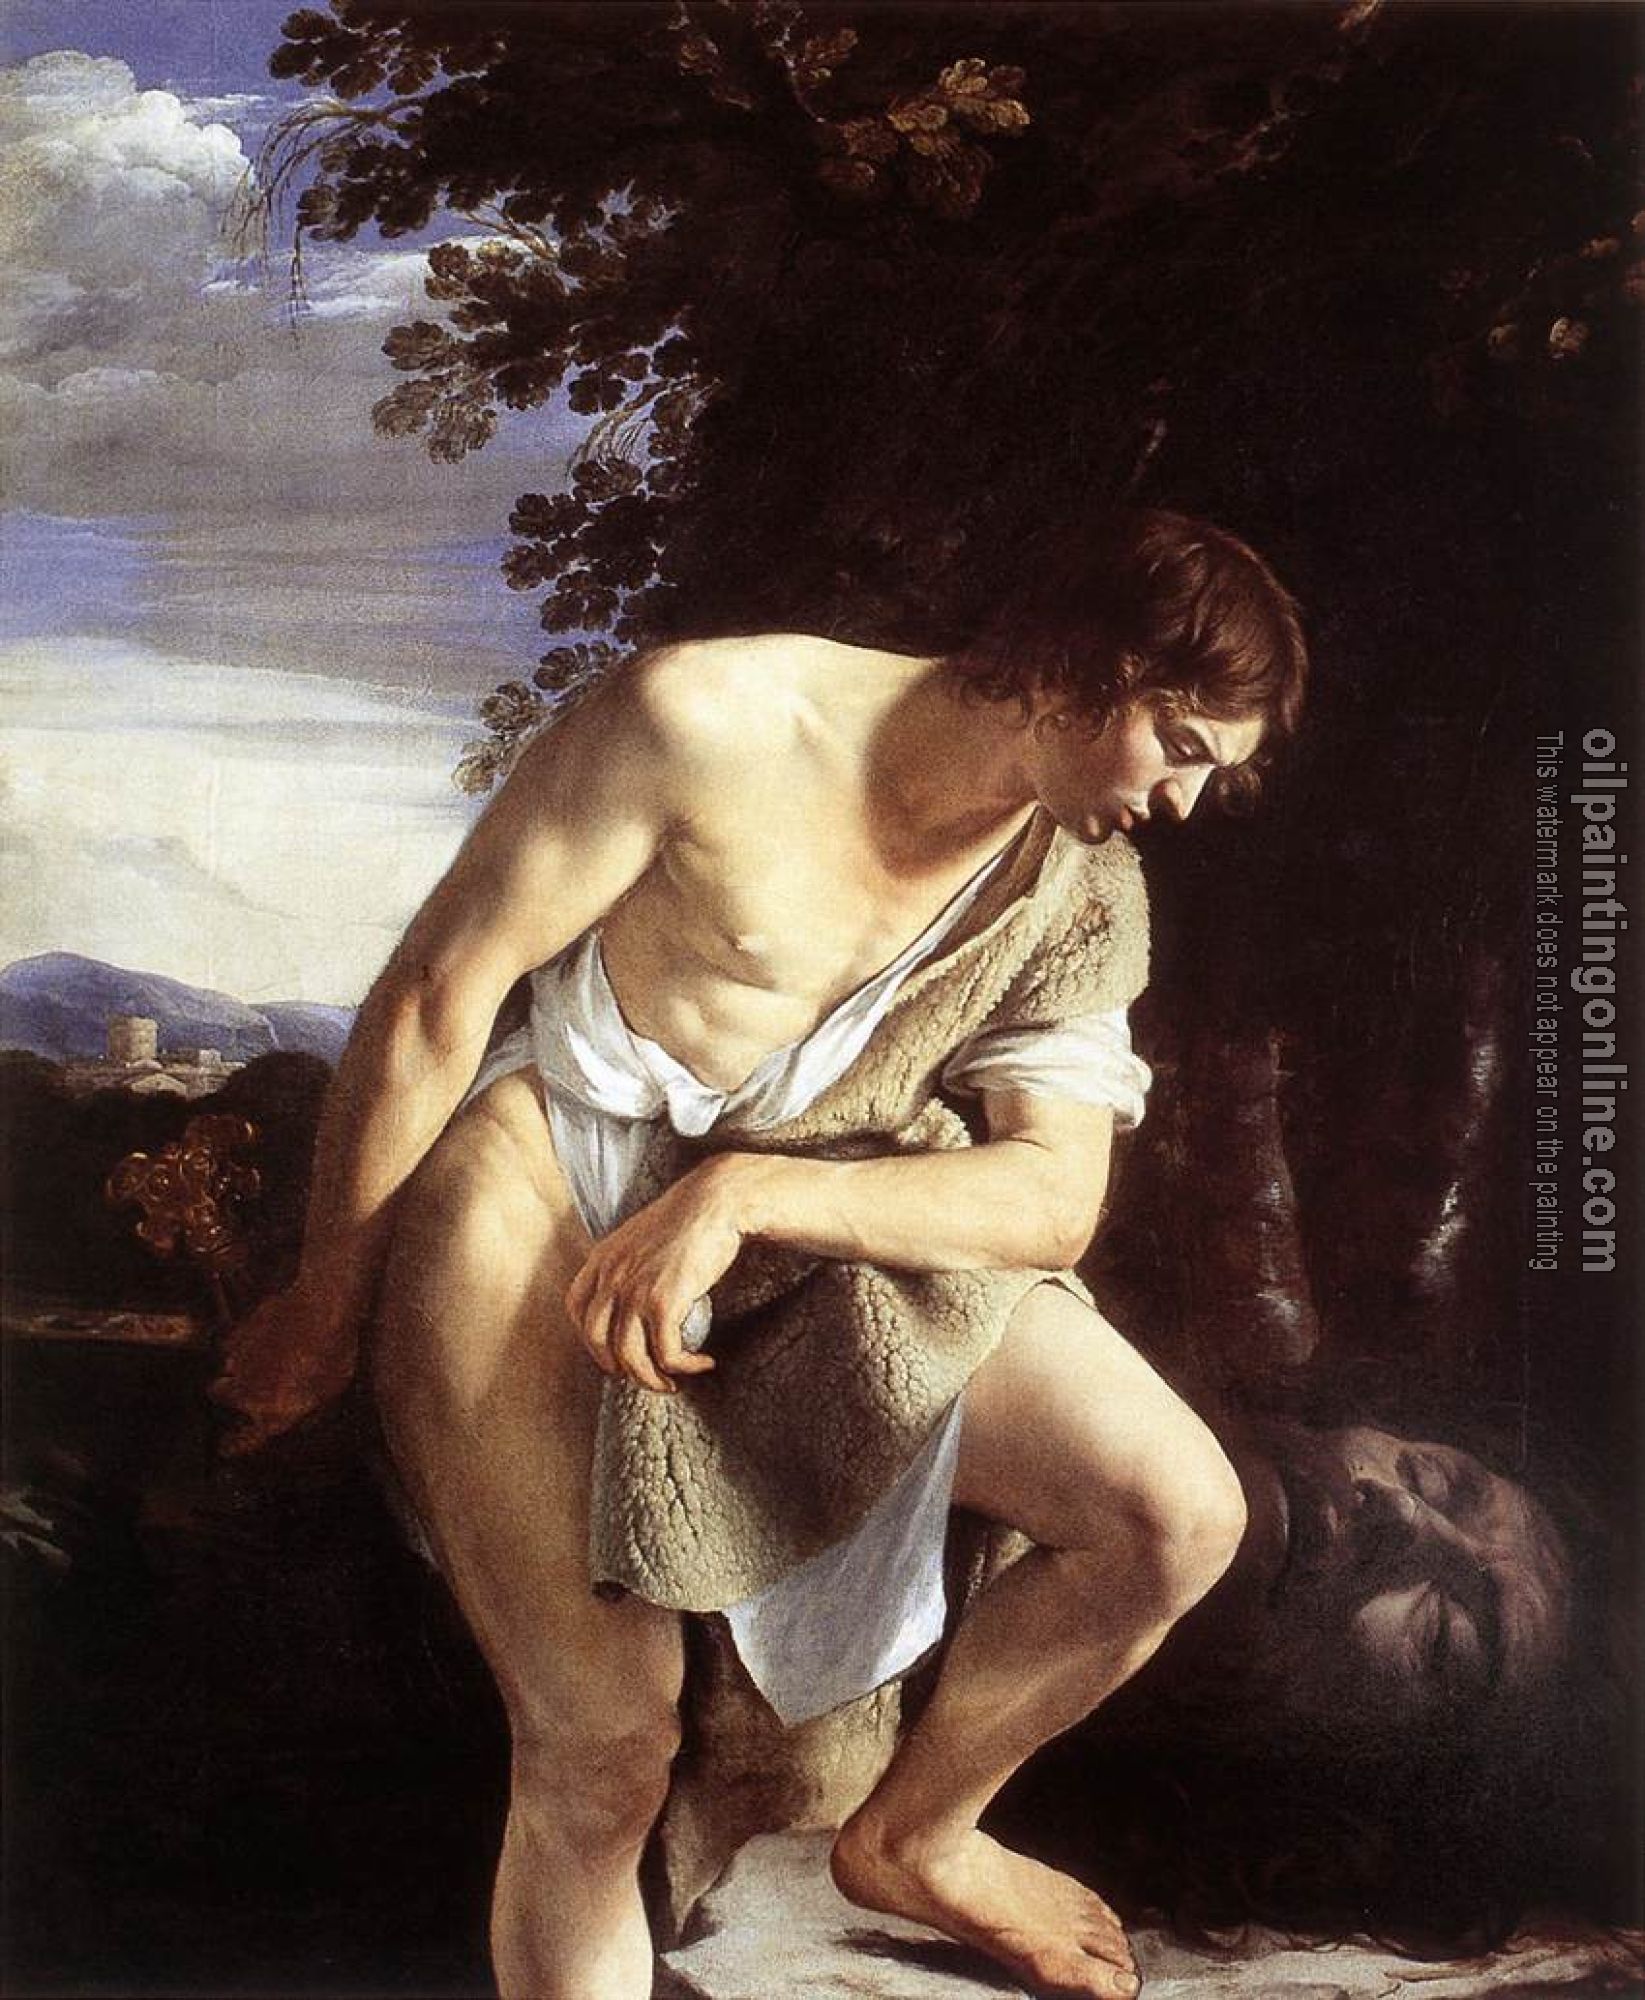 Gentileschi, Orazio - David Contemplating the Head of Goliath